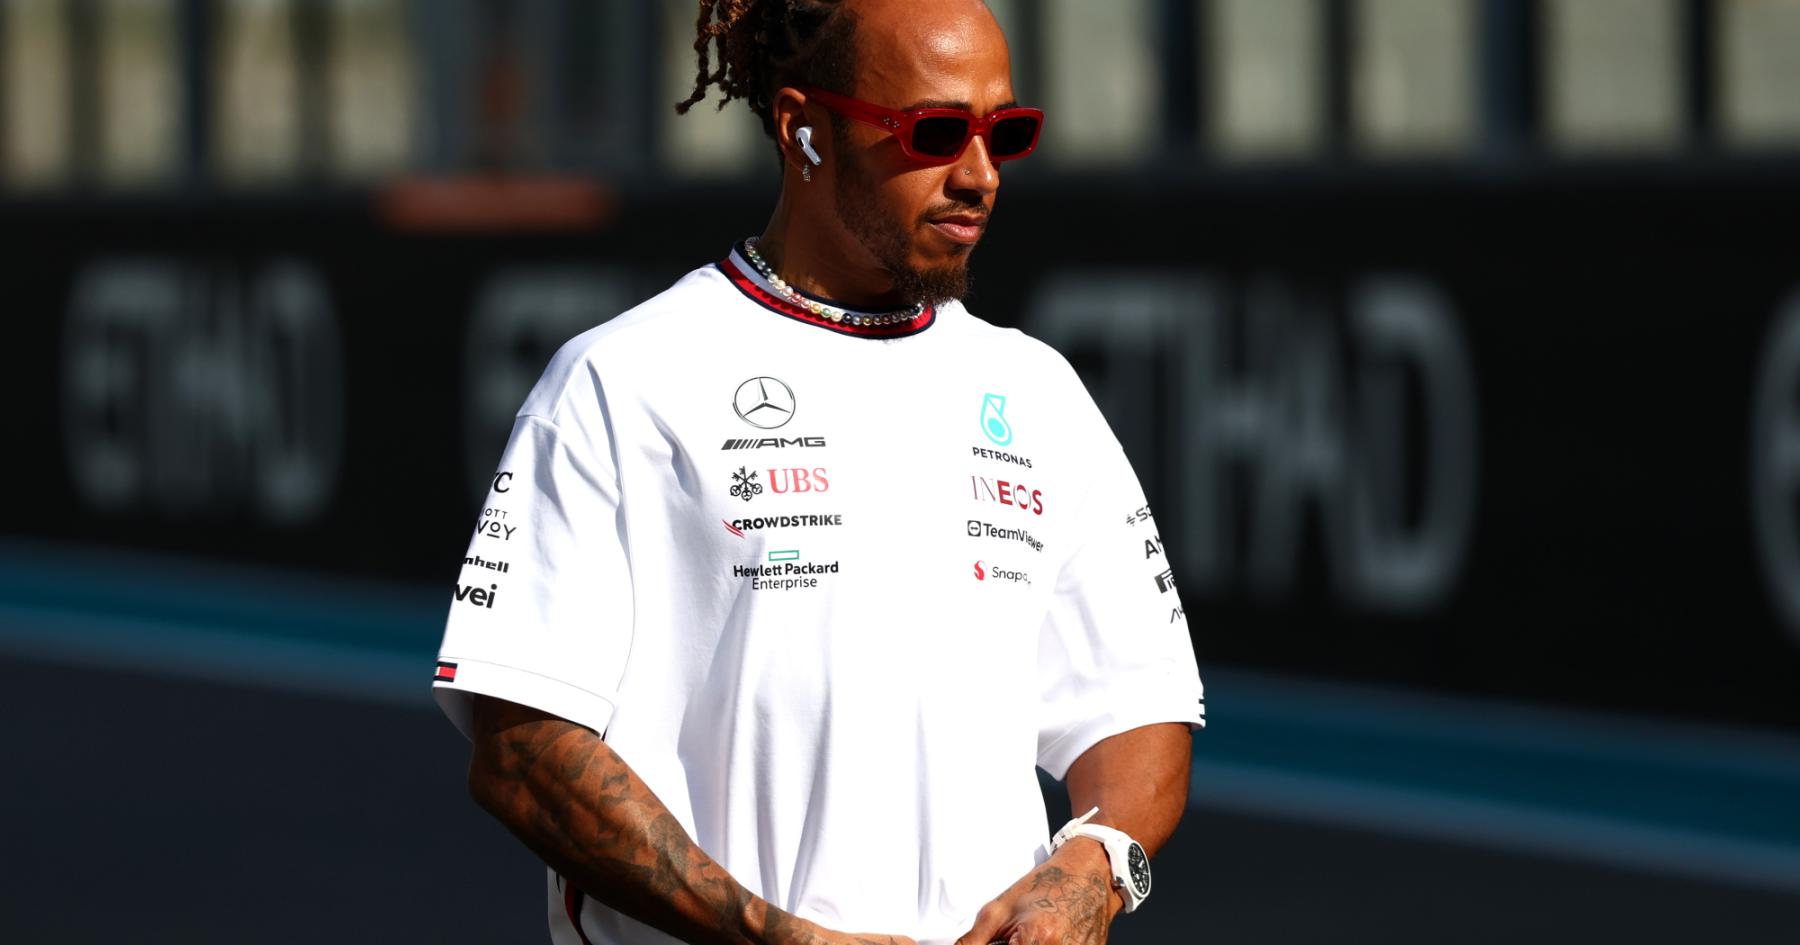 Unprecedented Shift: F1 World Shaken as Hamilton Dazzles with Ferrari Move